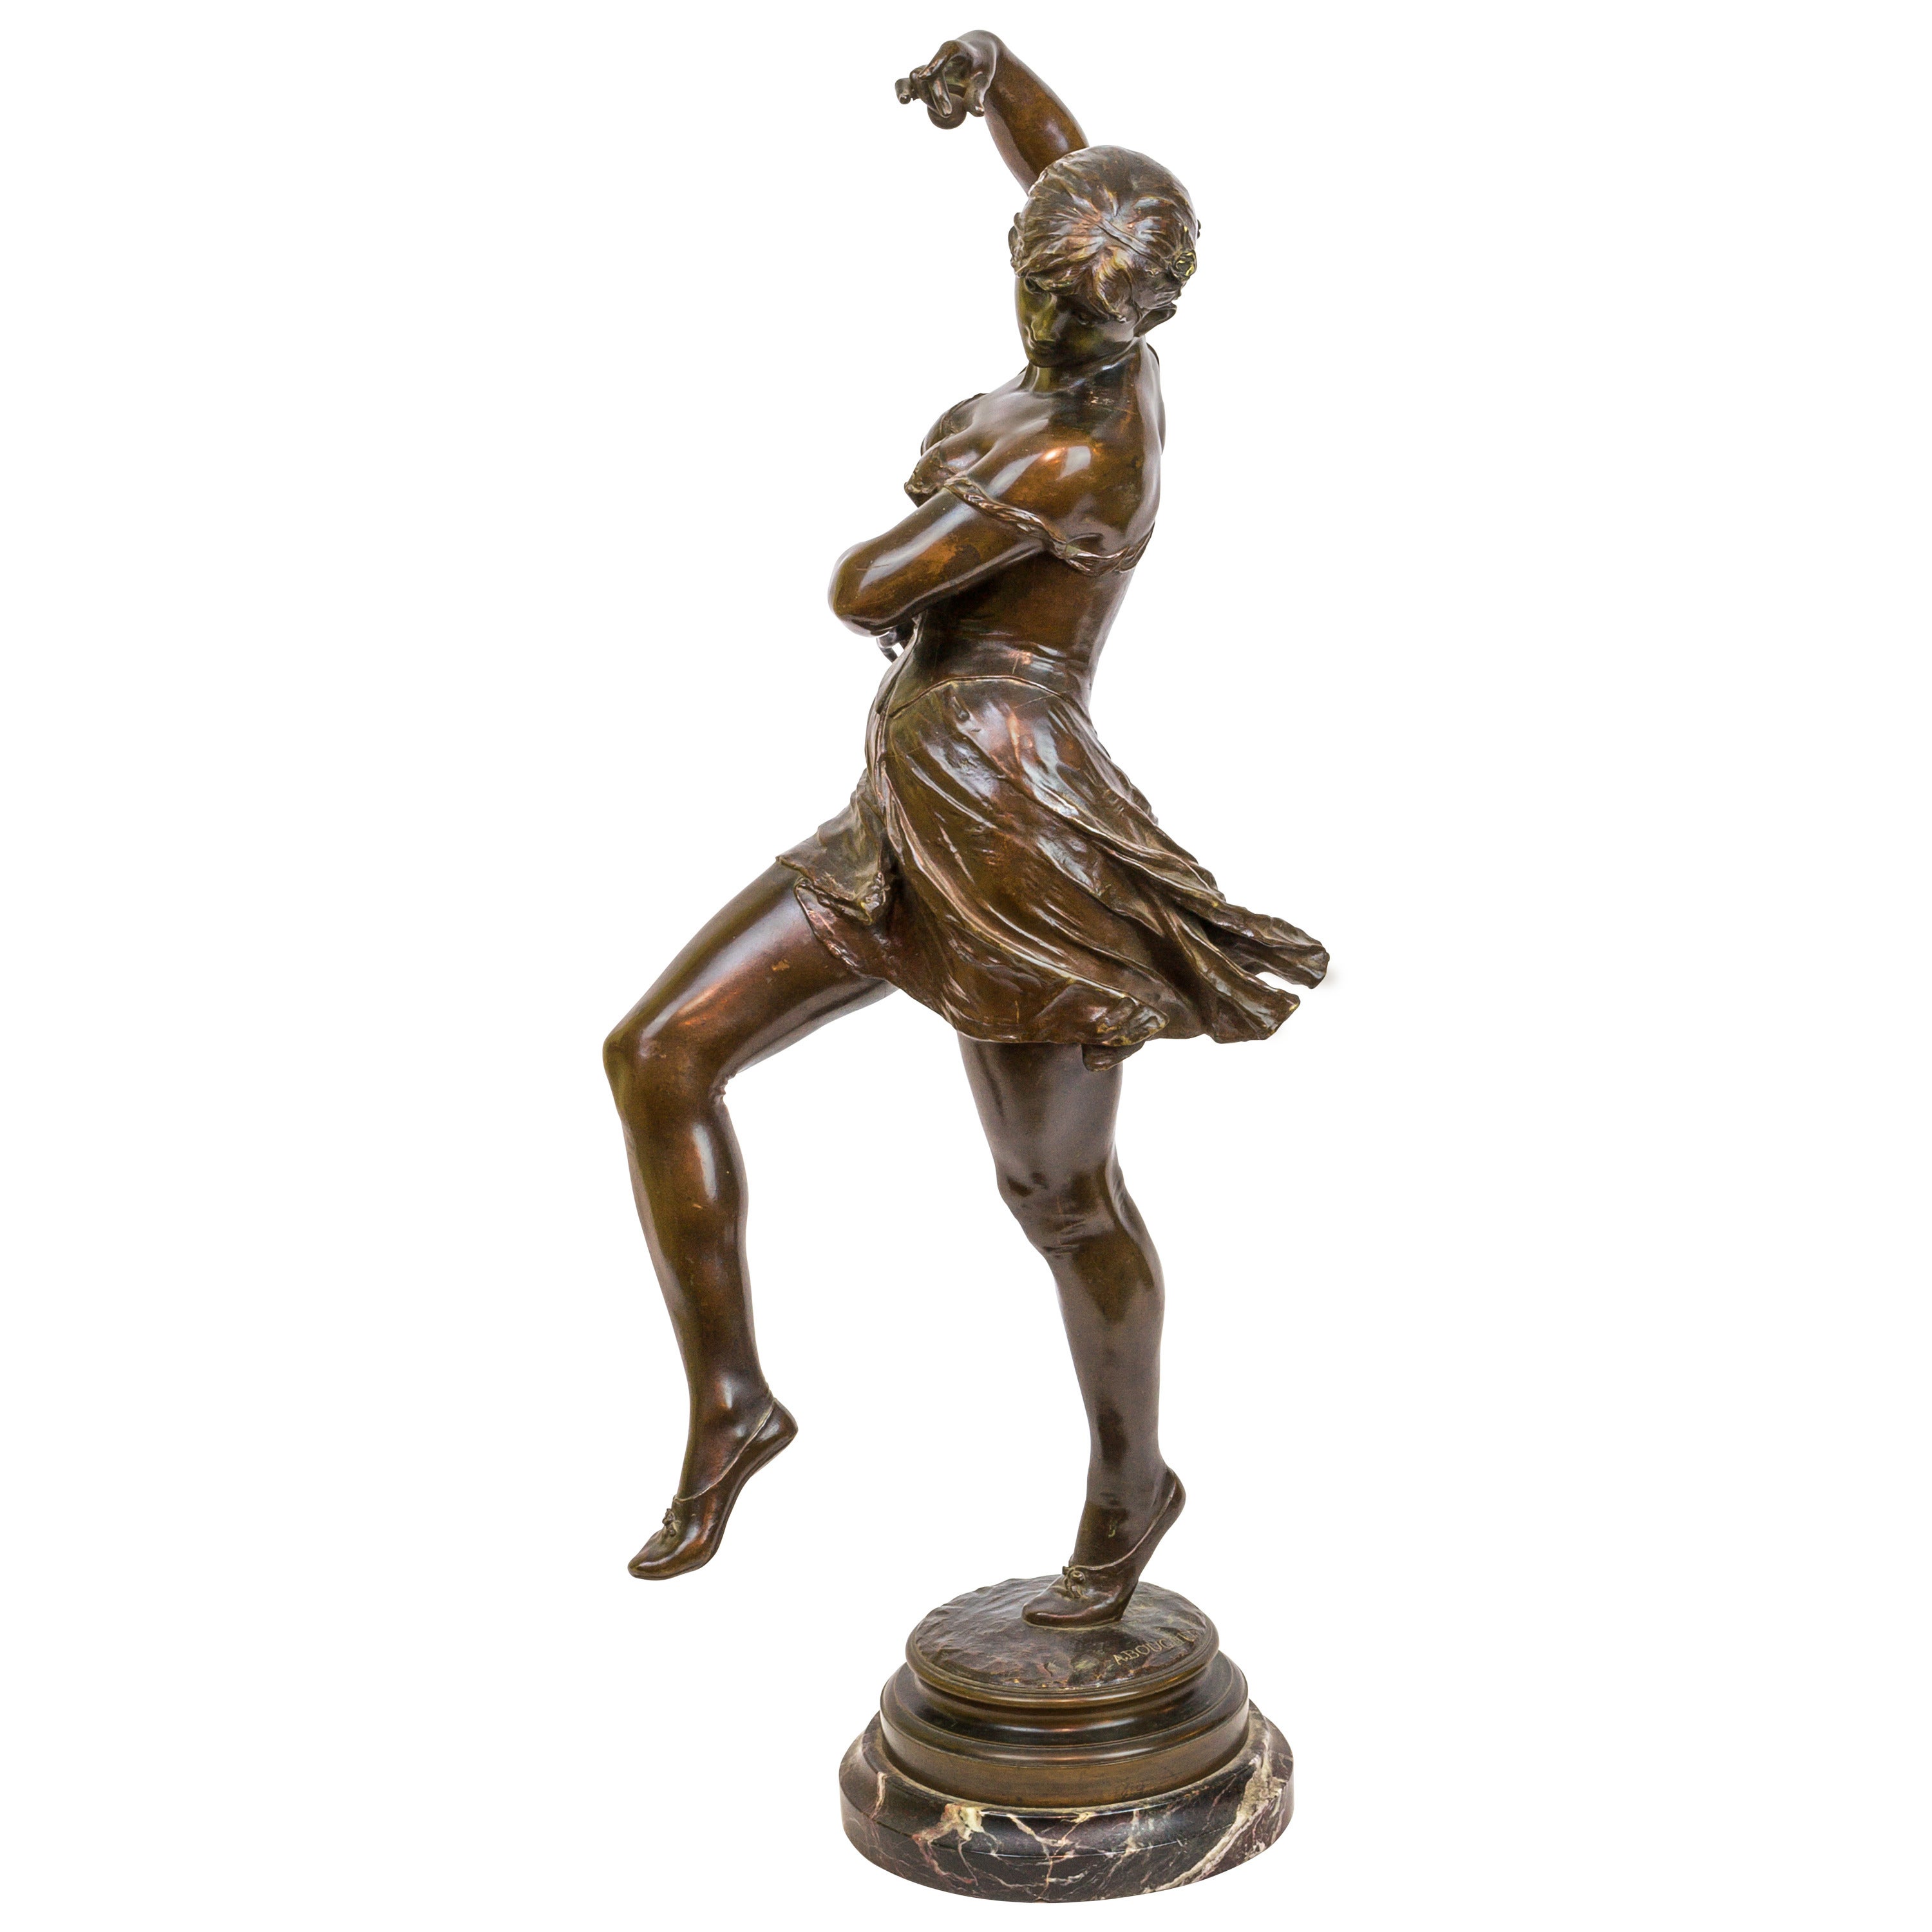 Patinated Bronze Figure of a Ballerina Dancer, Signed A. Boucher